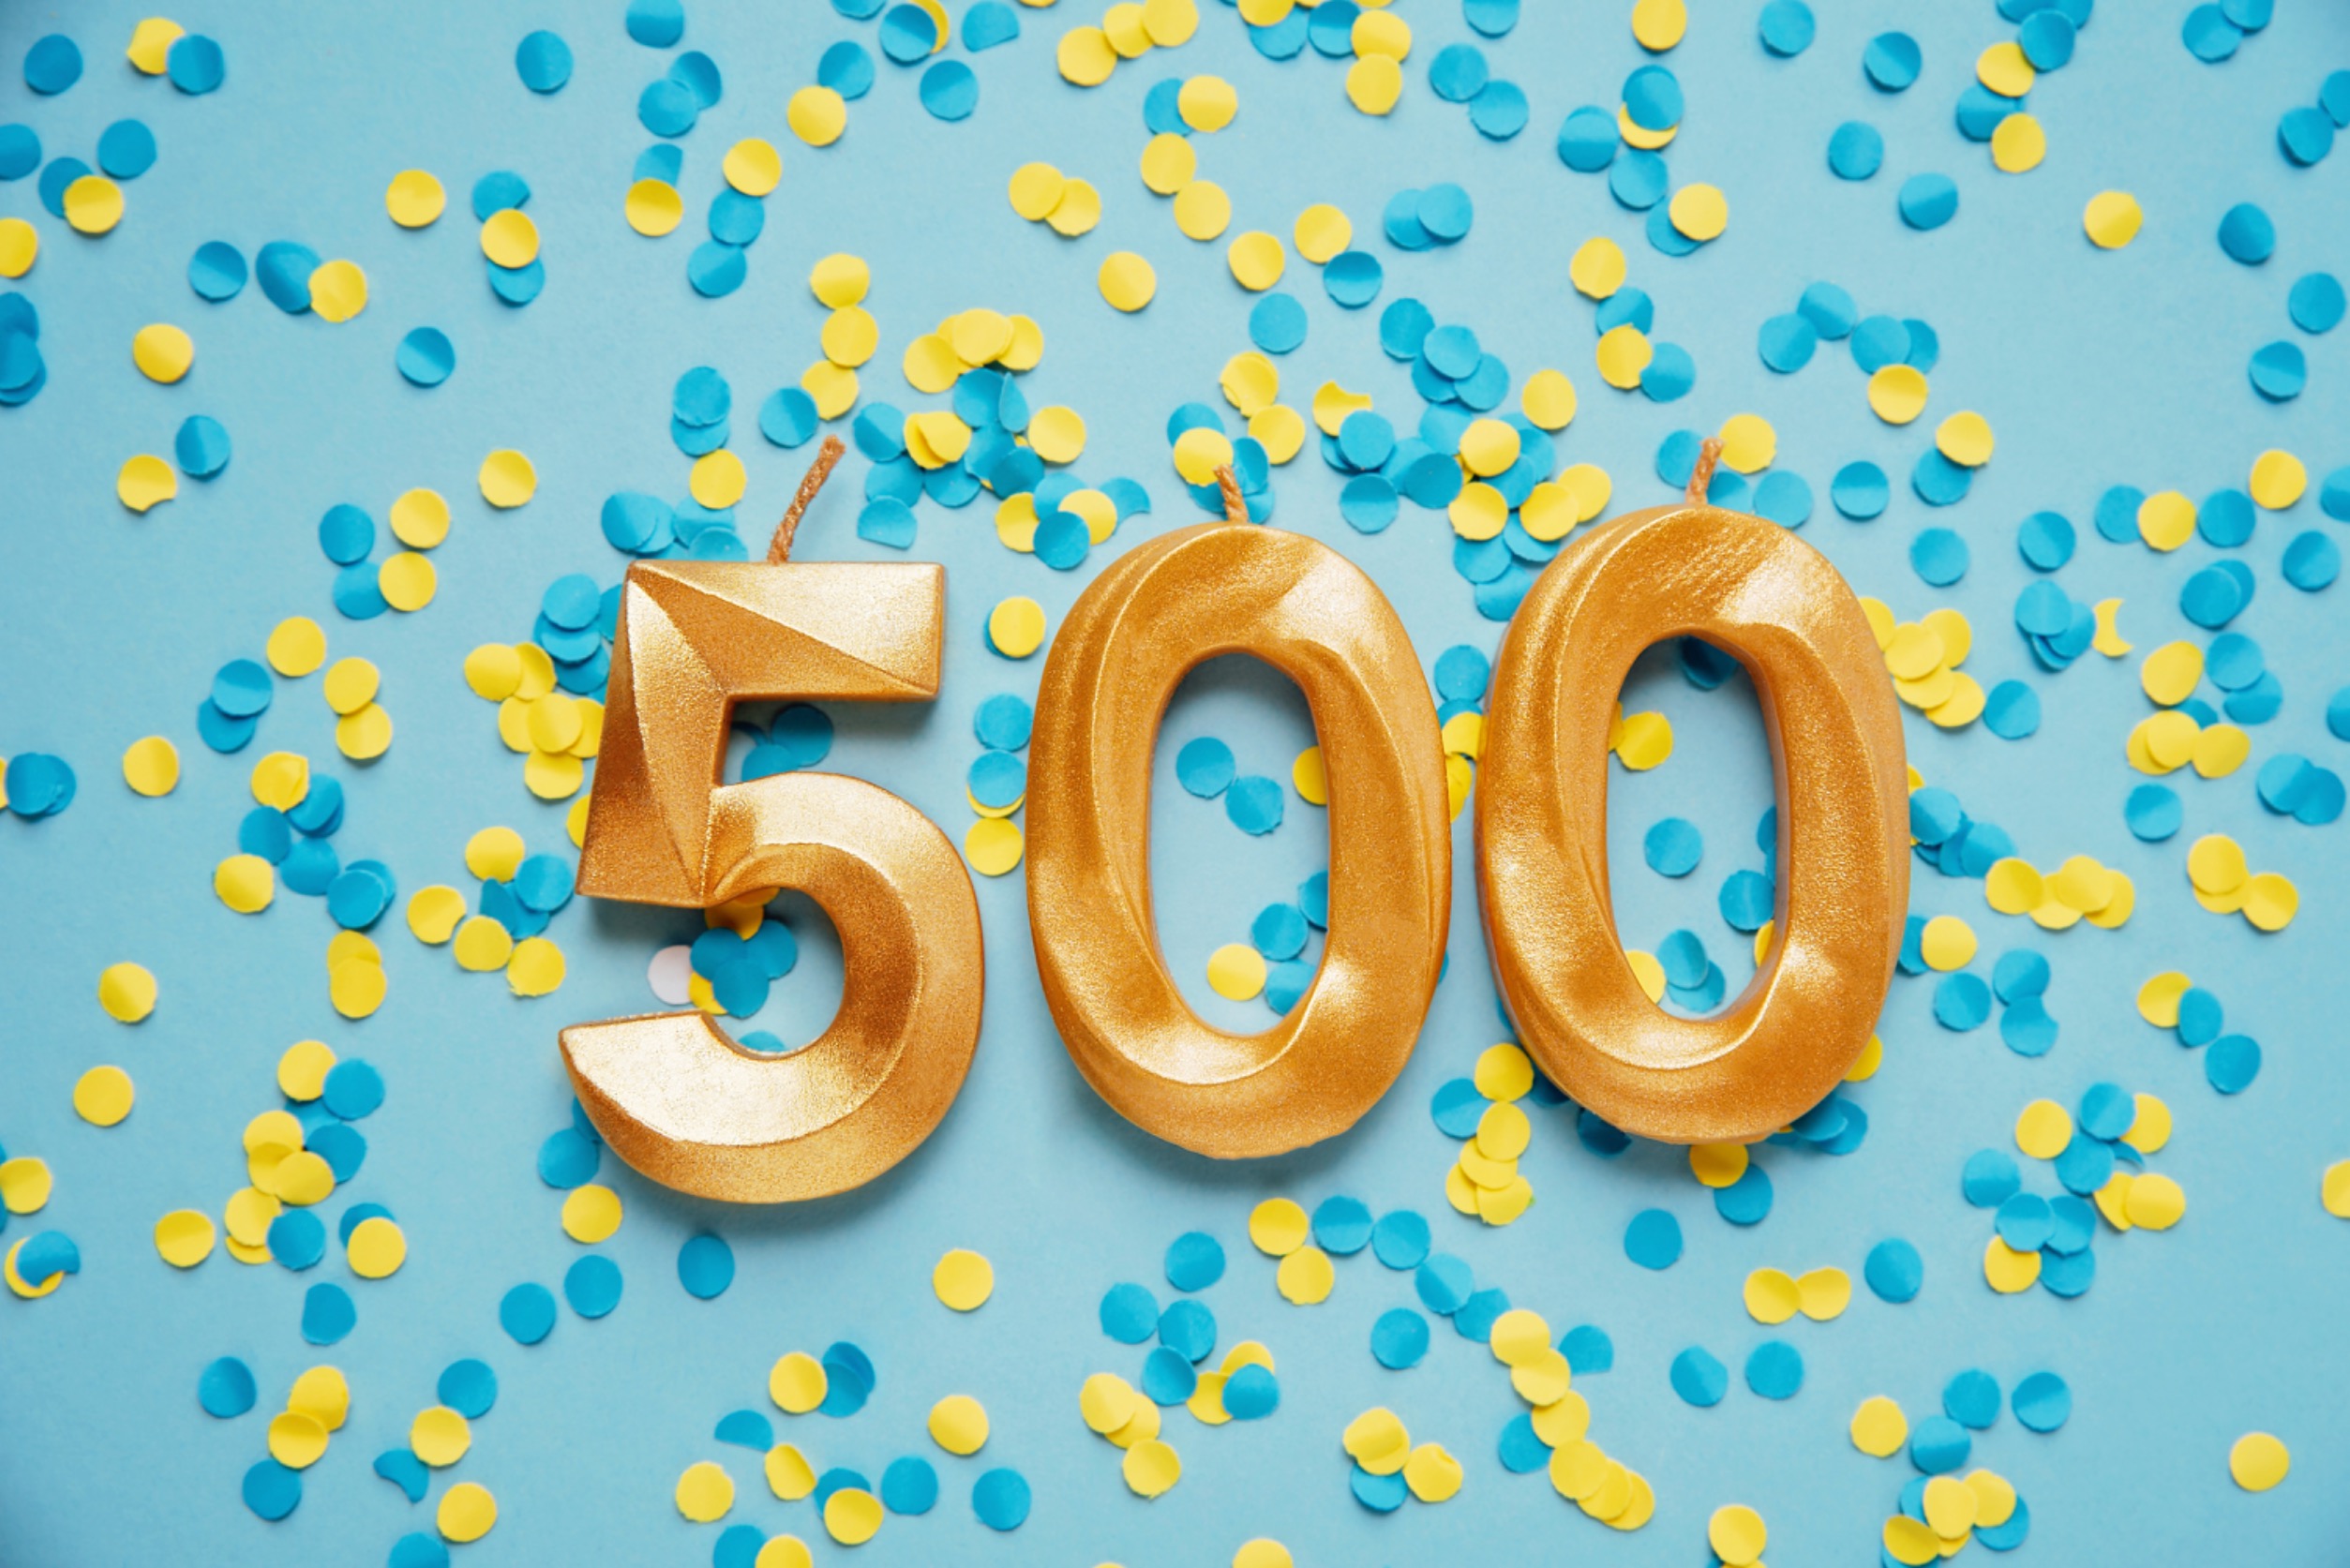 500 Celebration